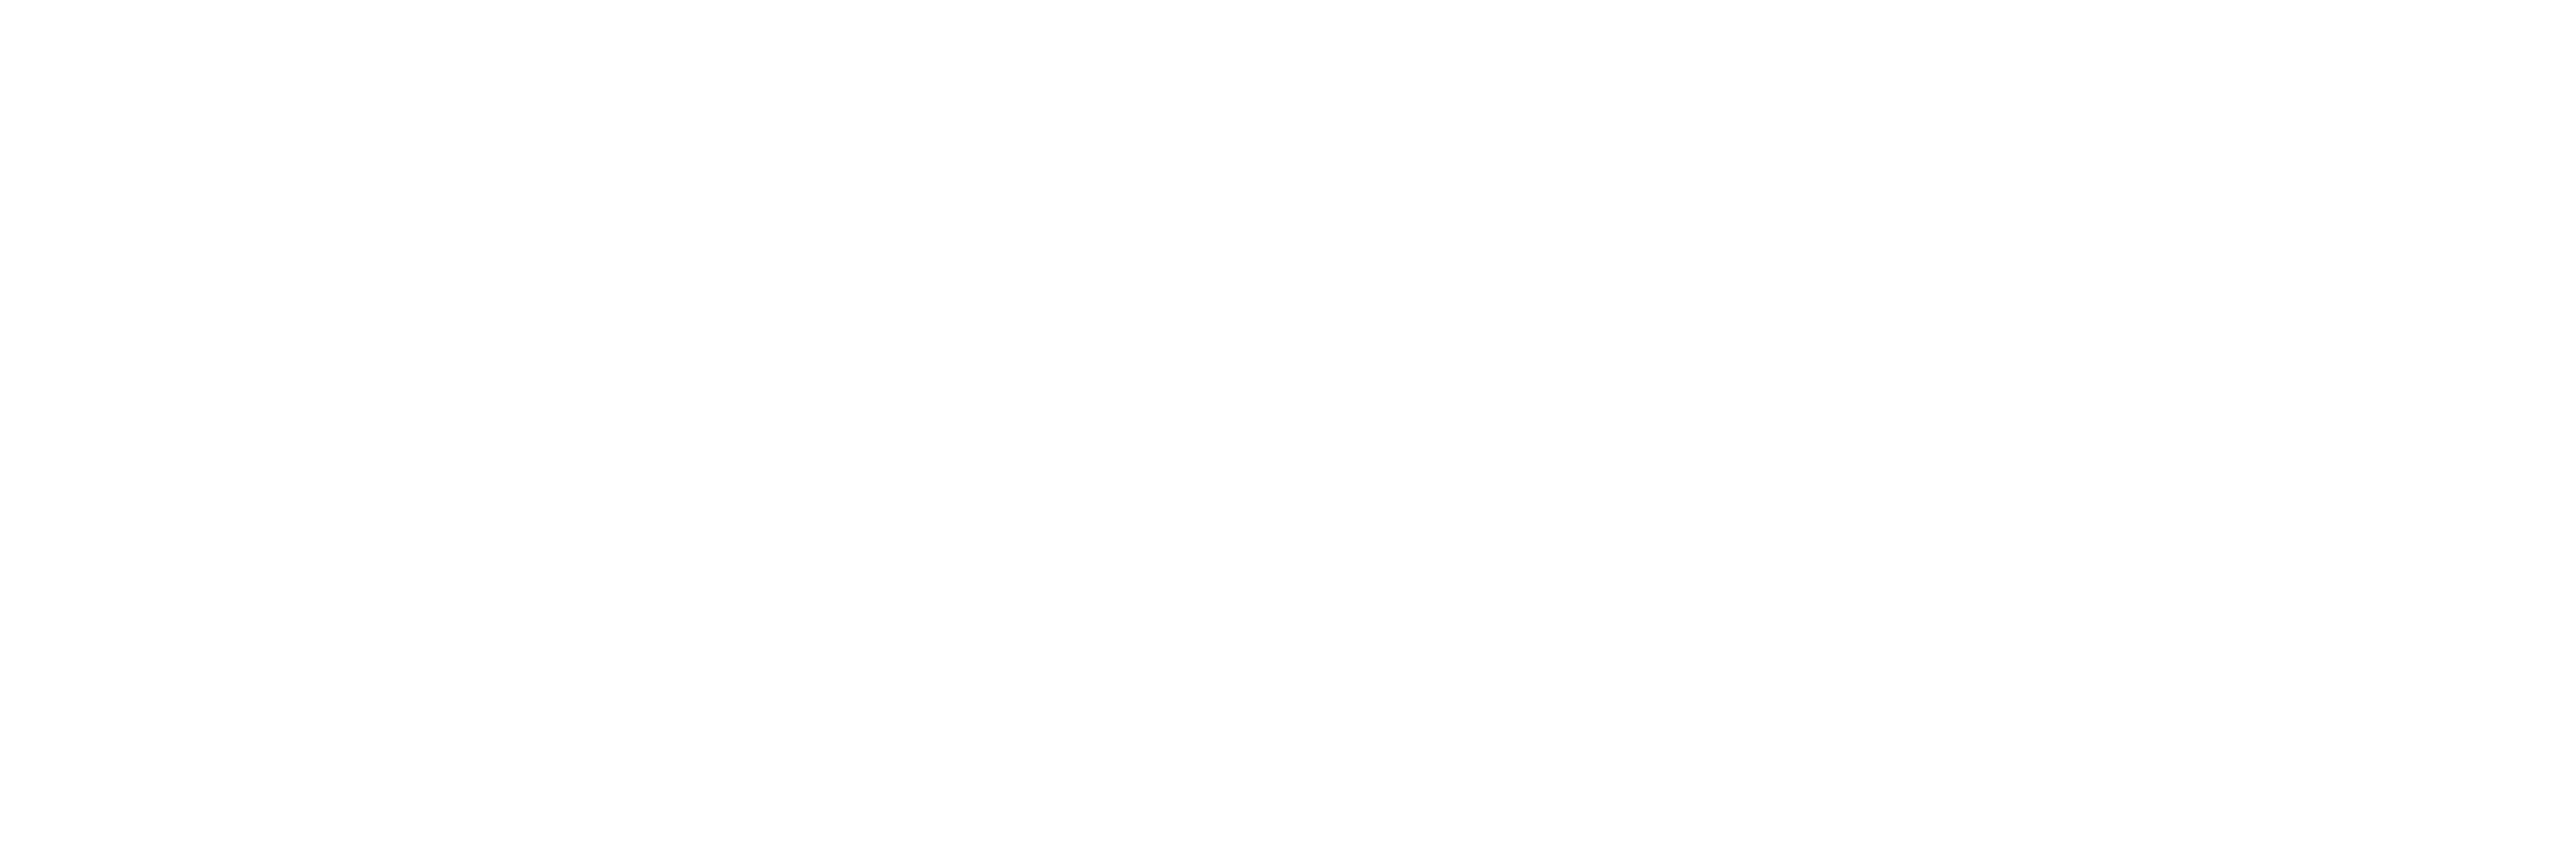 Casa Blanca Gastro Bar Cartagena